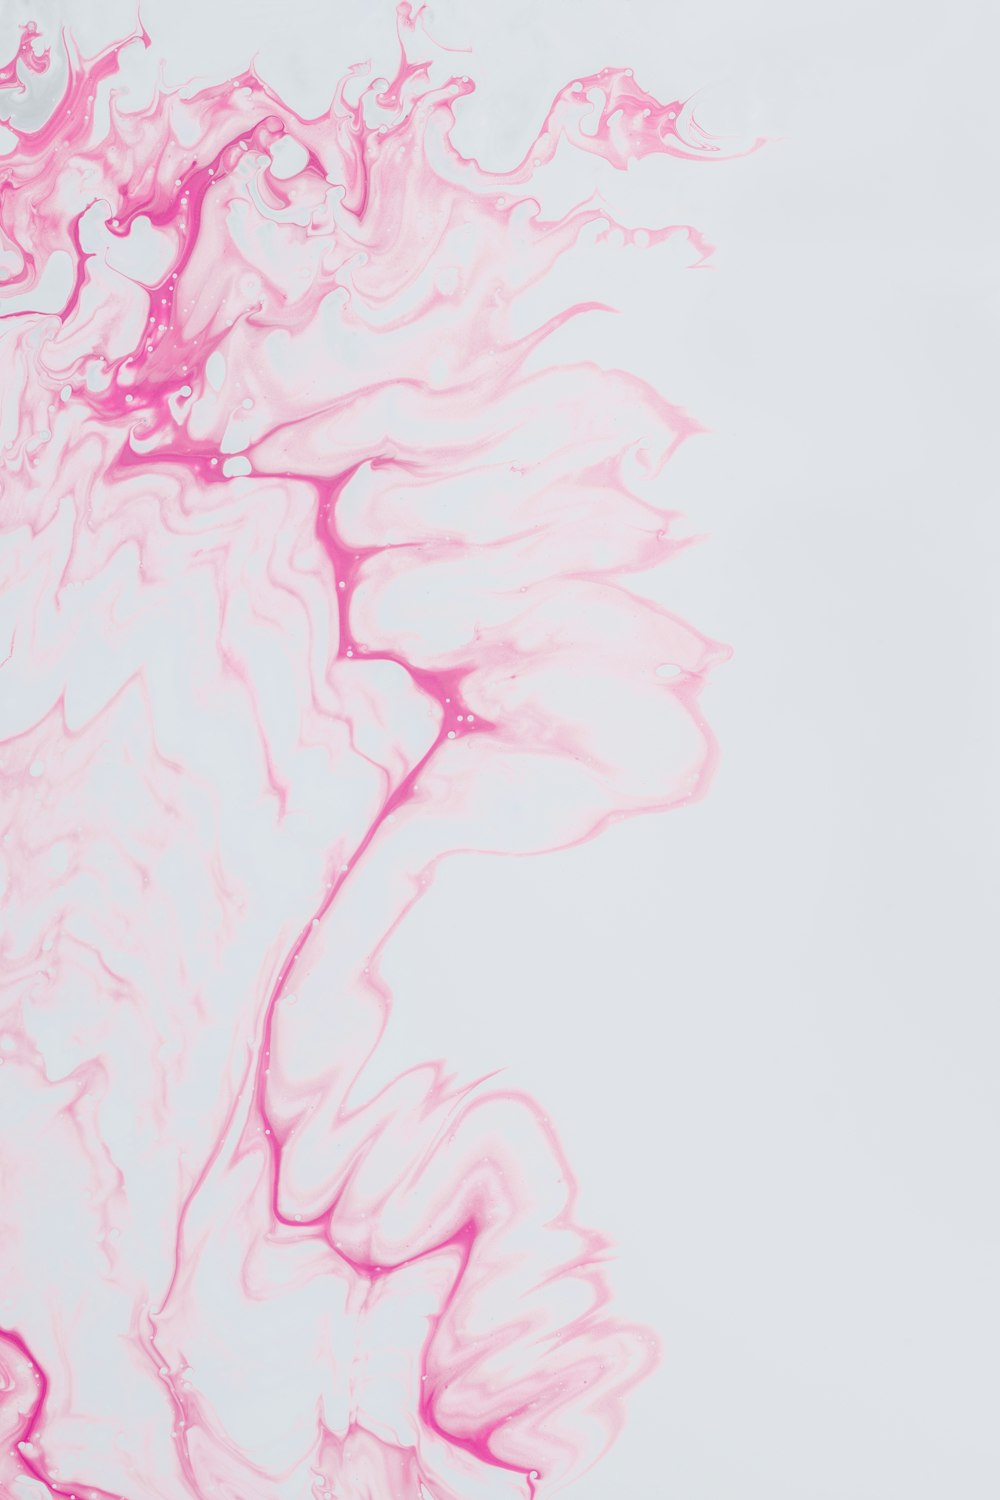 분홍색 잉크가 소용돌이치는 흰색 배경